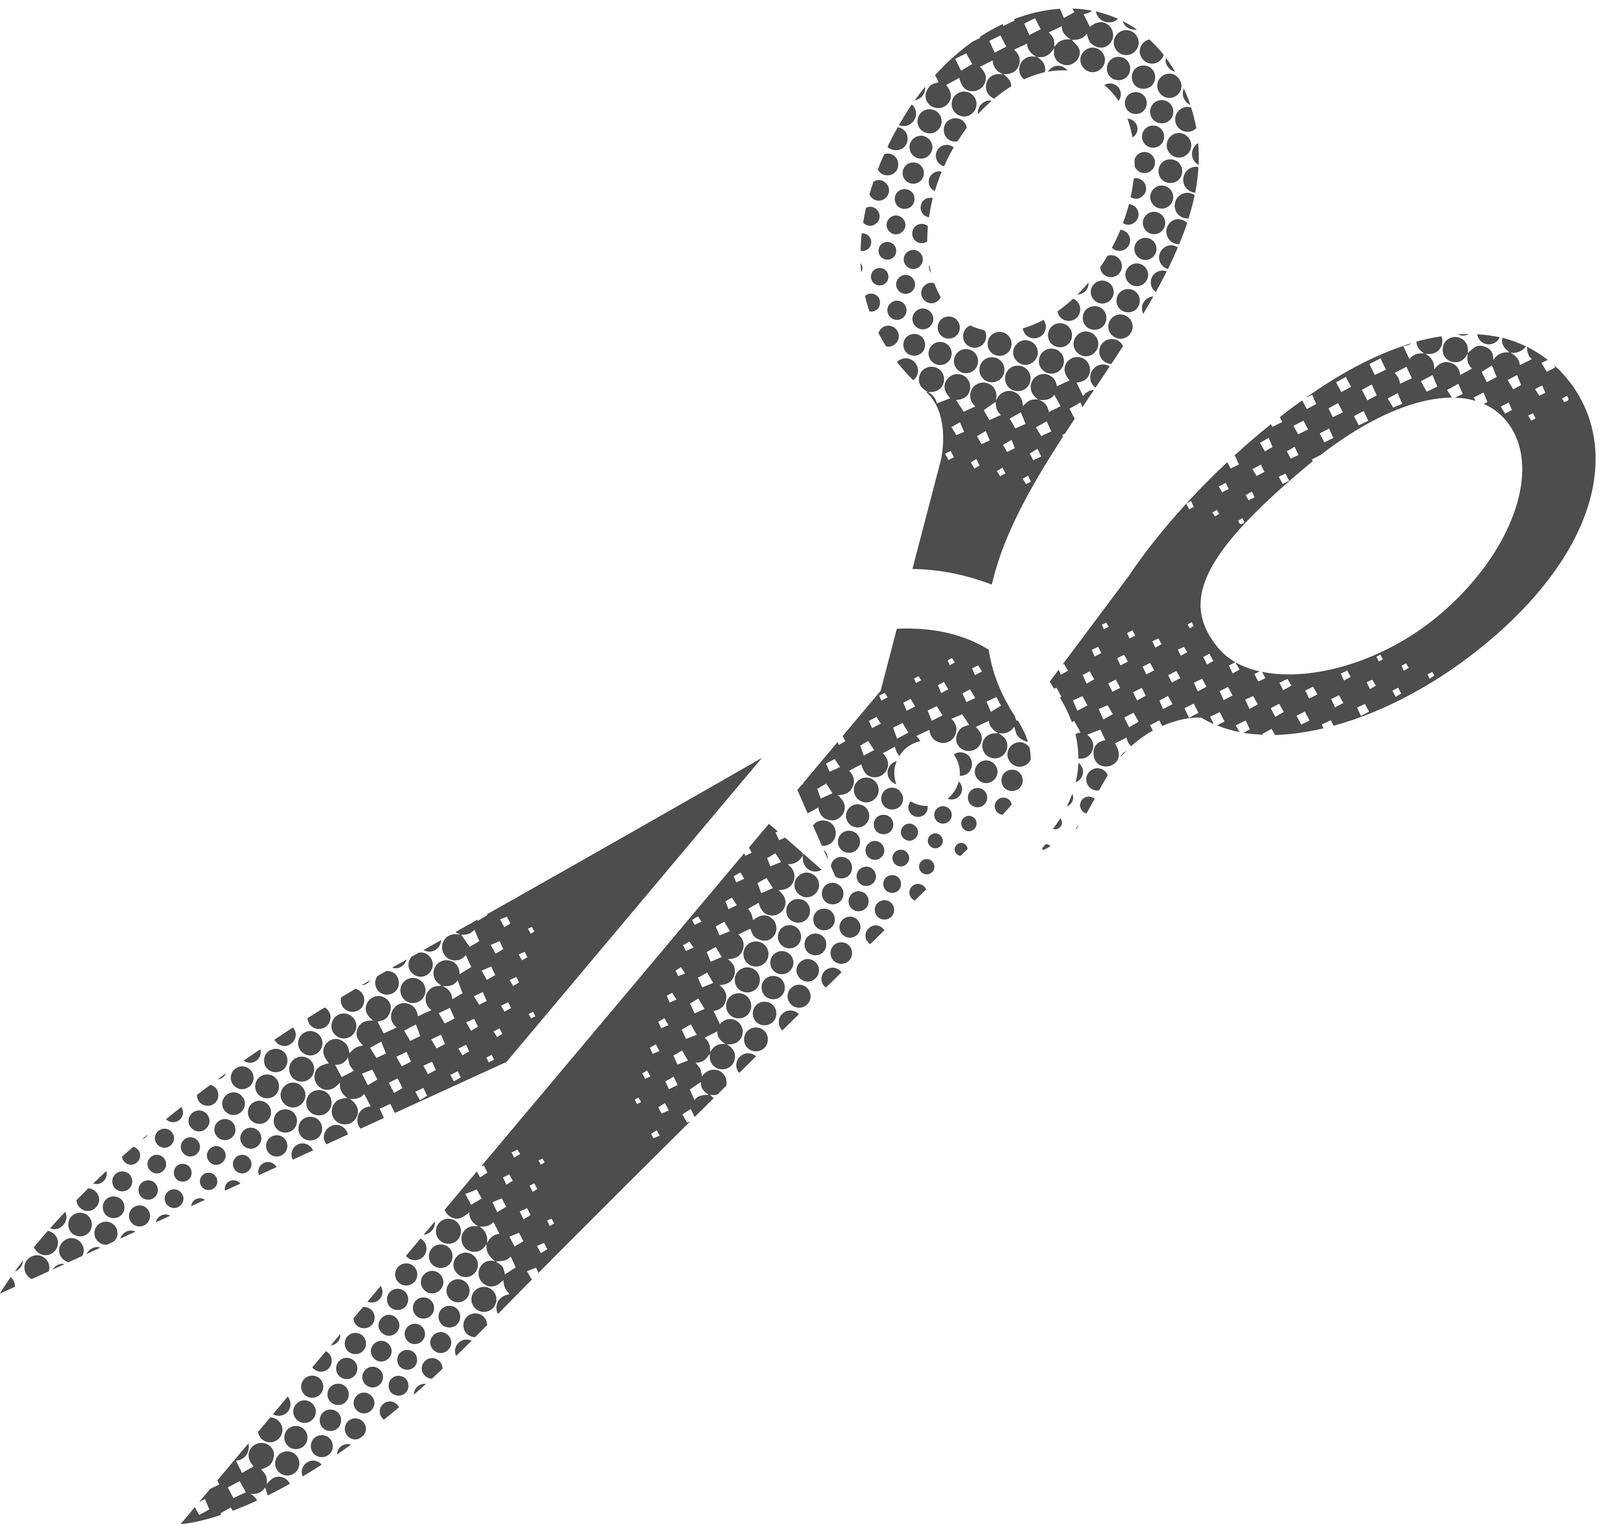 Scissor icon in halftone style. Black and white monochrome vector illustration.